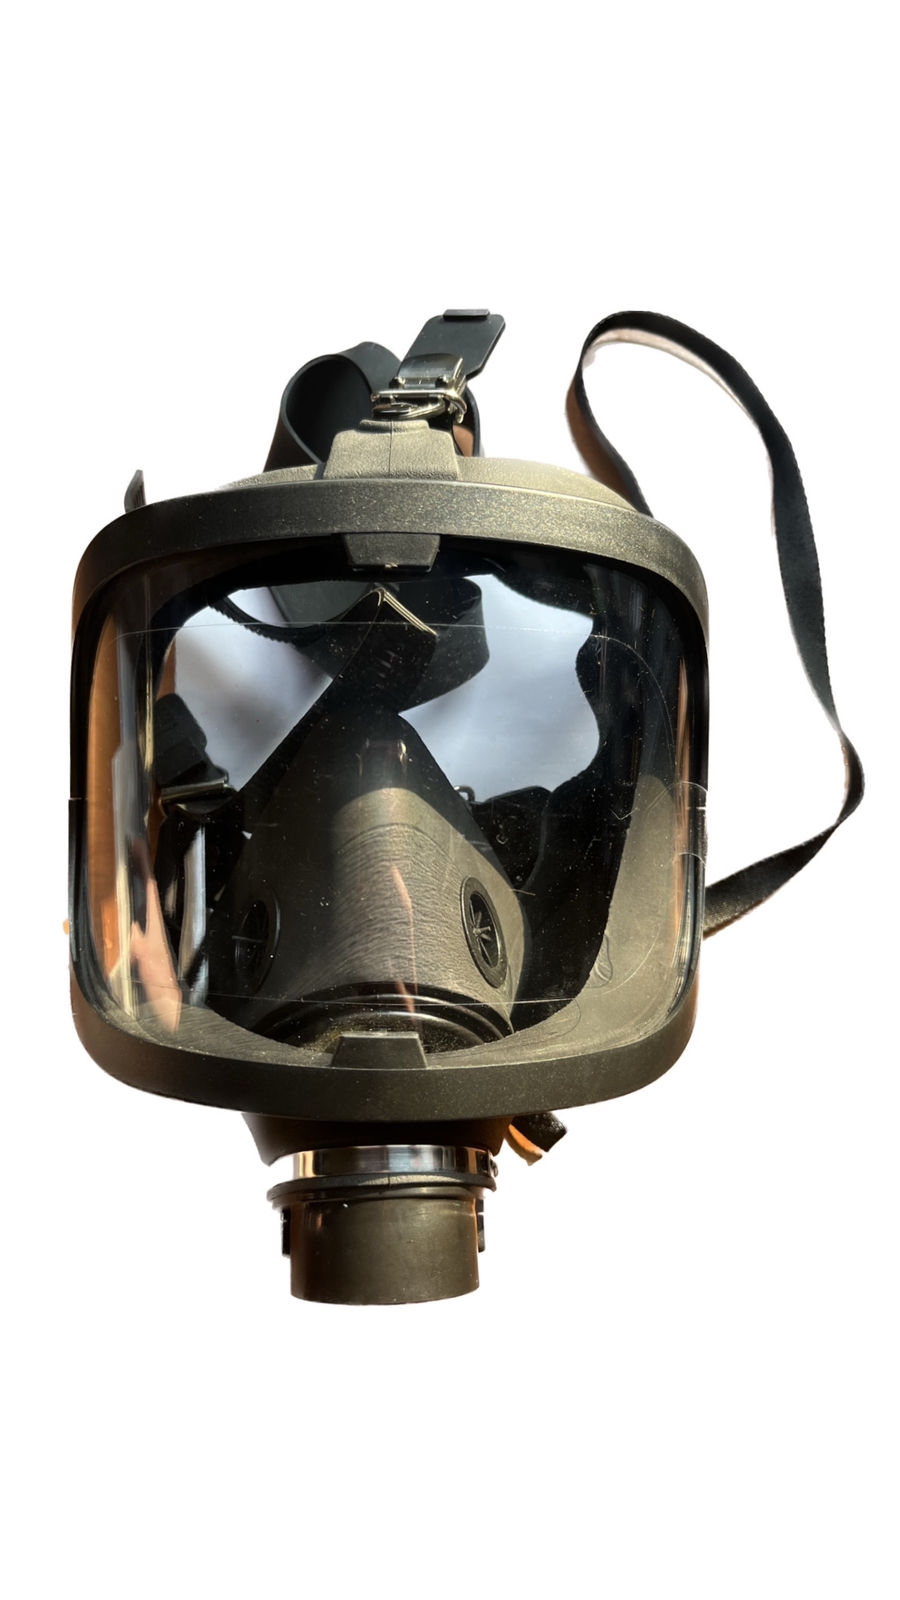 Широкопанорамная маска МАГ Модель 2